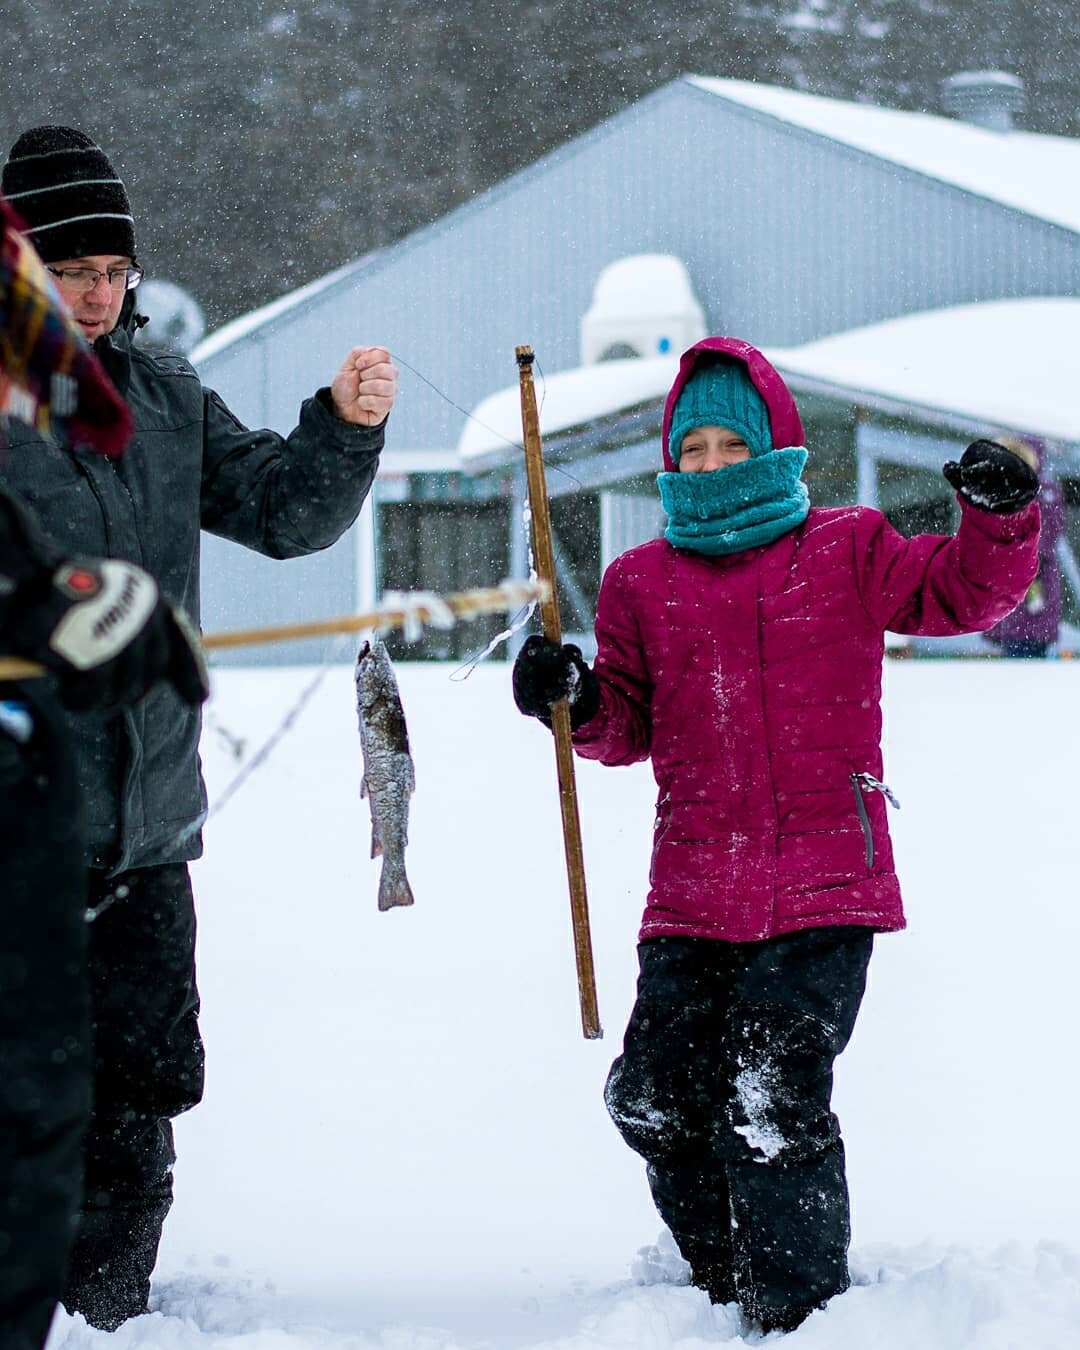 On est all&eacute; p&ecirc;cher sur glace avec les Louveteaux hier ! 🐟🎣 Une belle exp&eacute;rience 😁
#pechesurglace #icefishing #scoutsducanada #scout133 #scouting #youthprogram #louveteaux